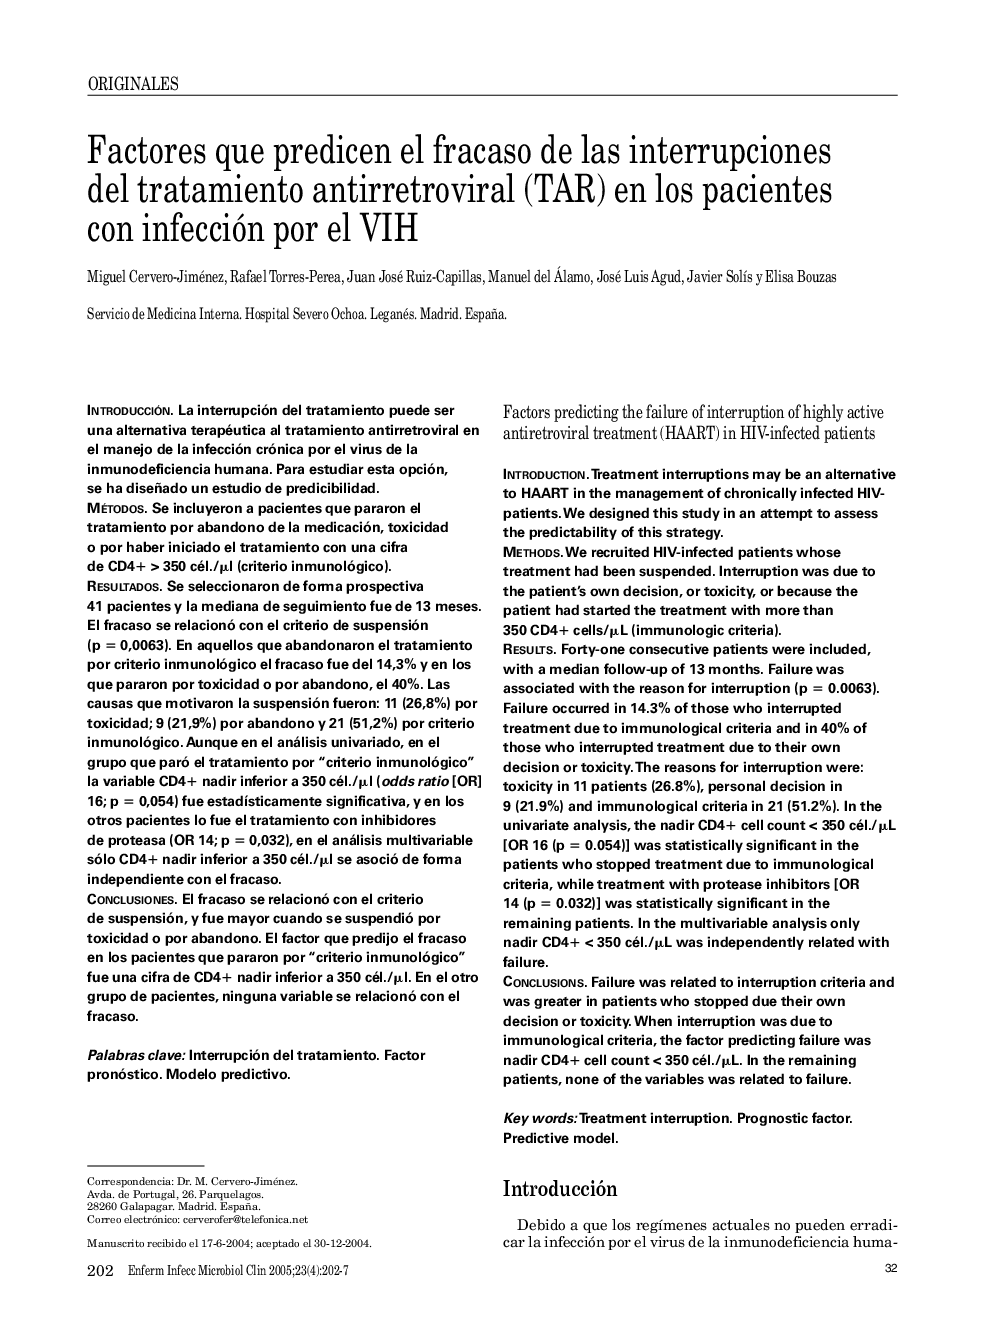 Factores que predicen el fracaso de las interrupciones del tratamiento antirretroviral (TAR) en los pacientes con infección por el VIH